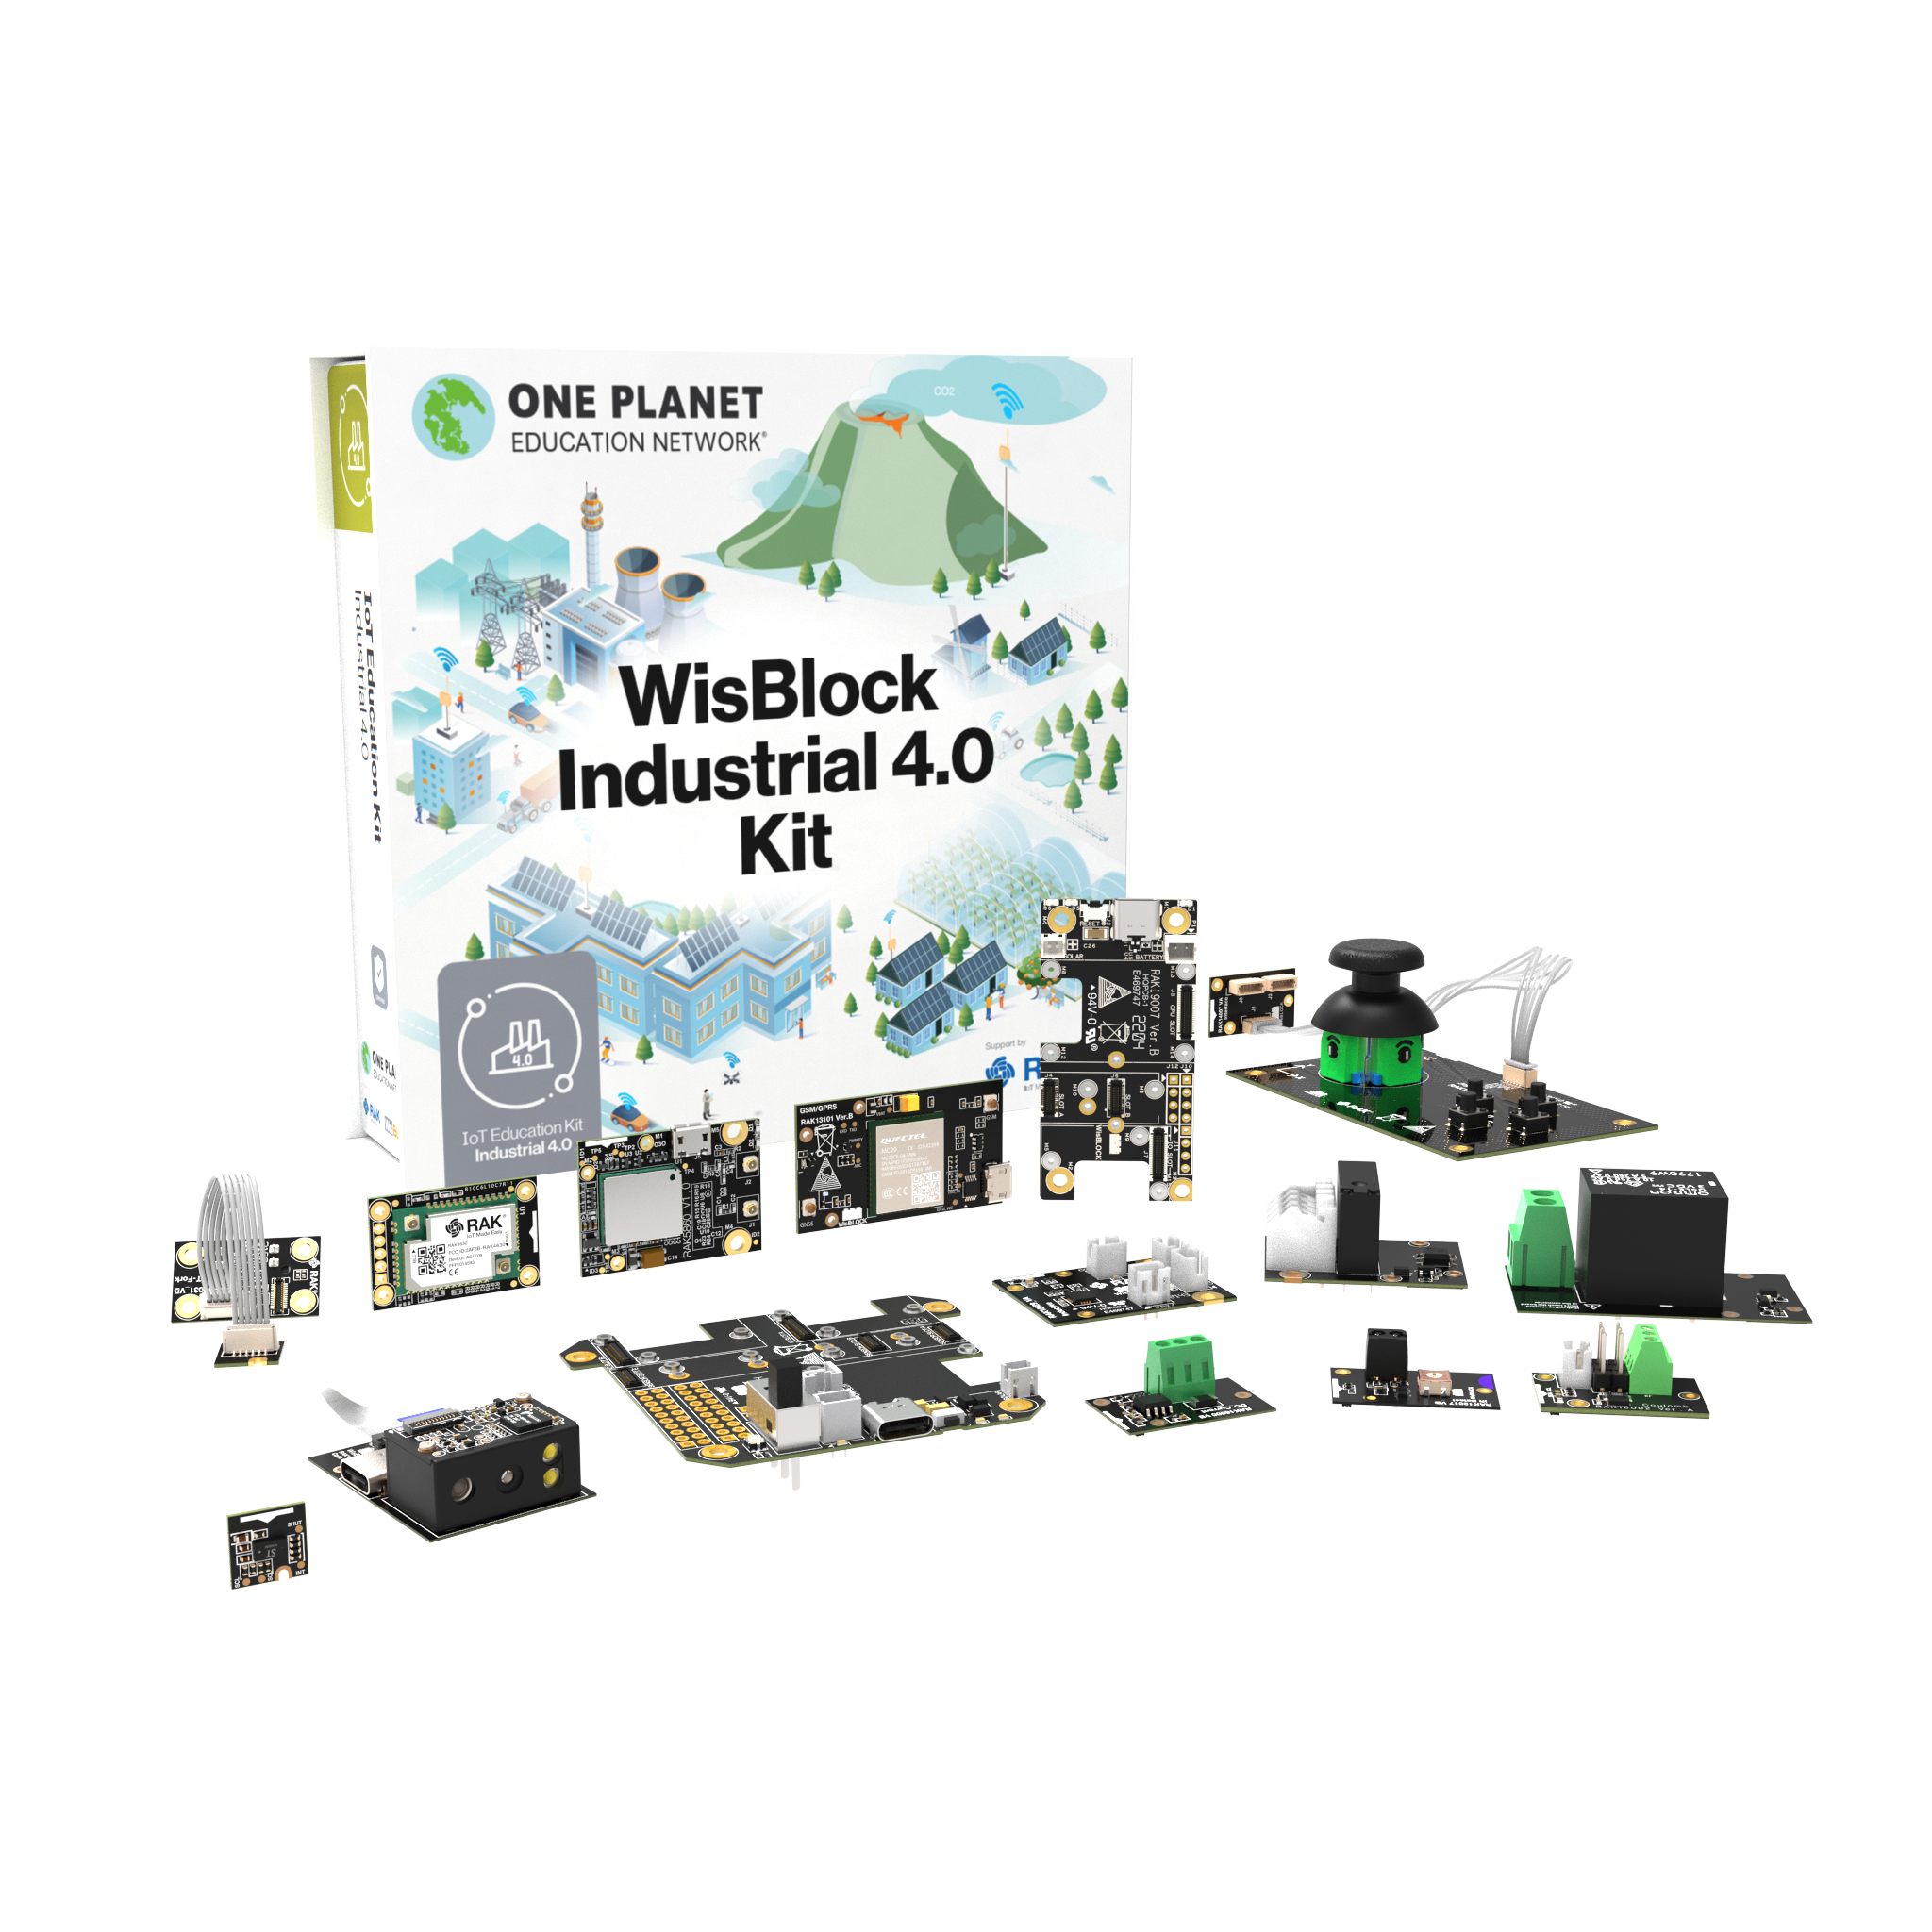 WisBlock Industrial 4.0 Kit